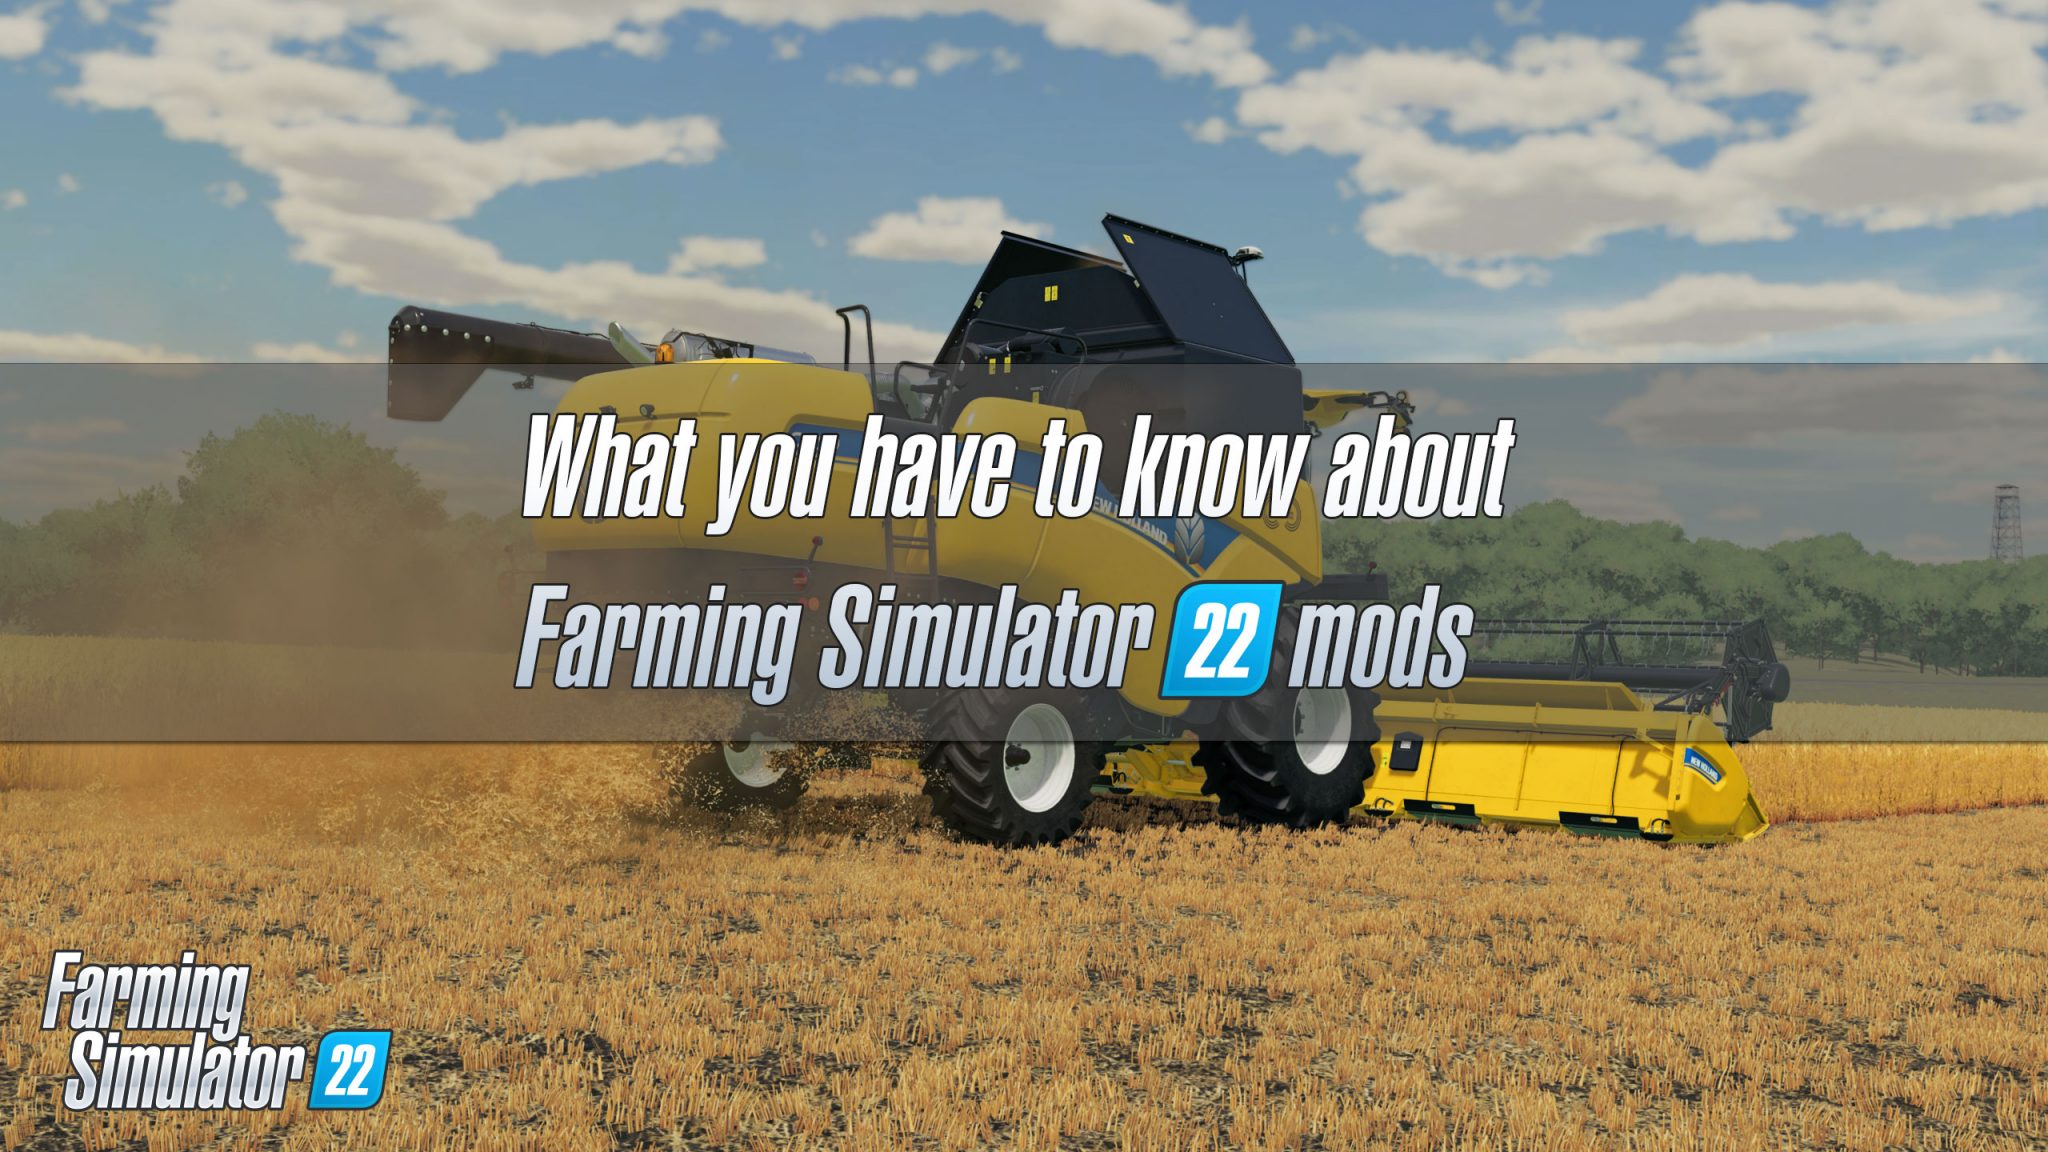 download free precision farming fs22